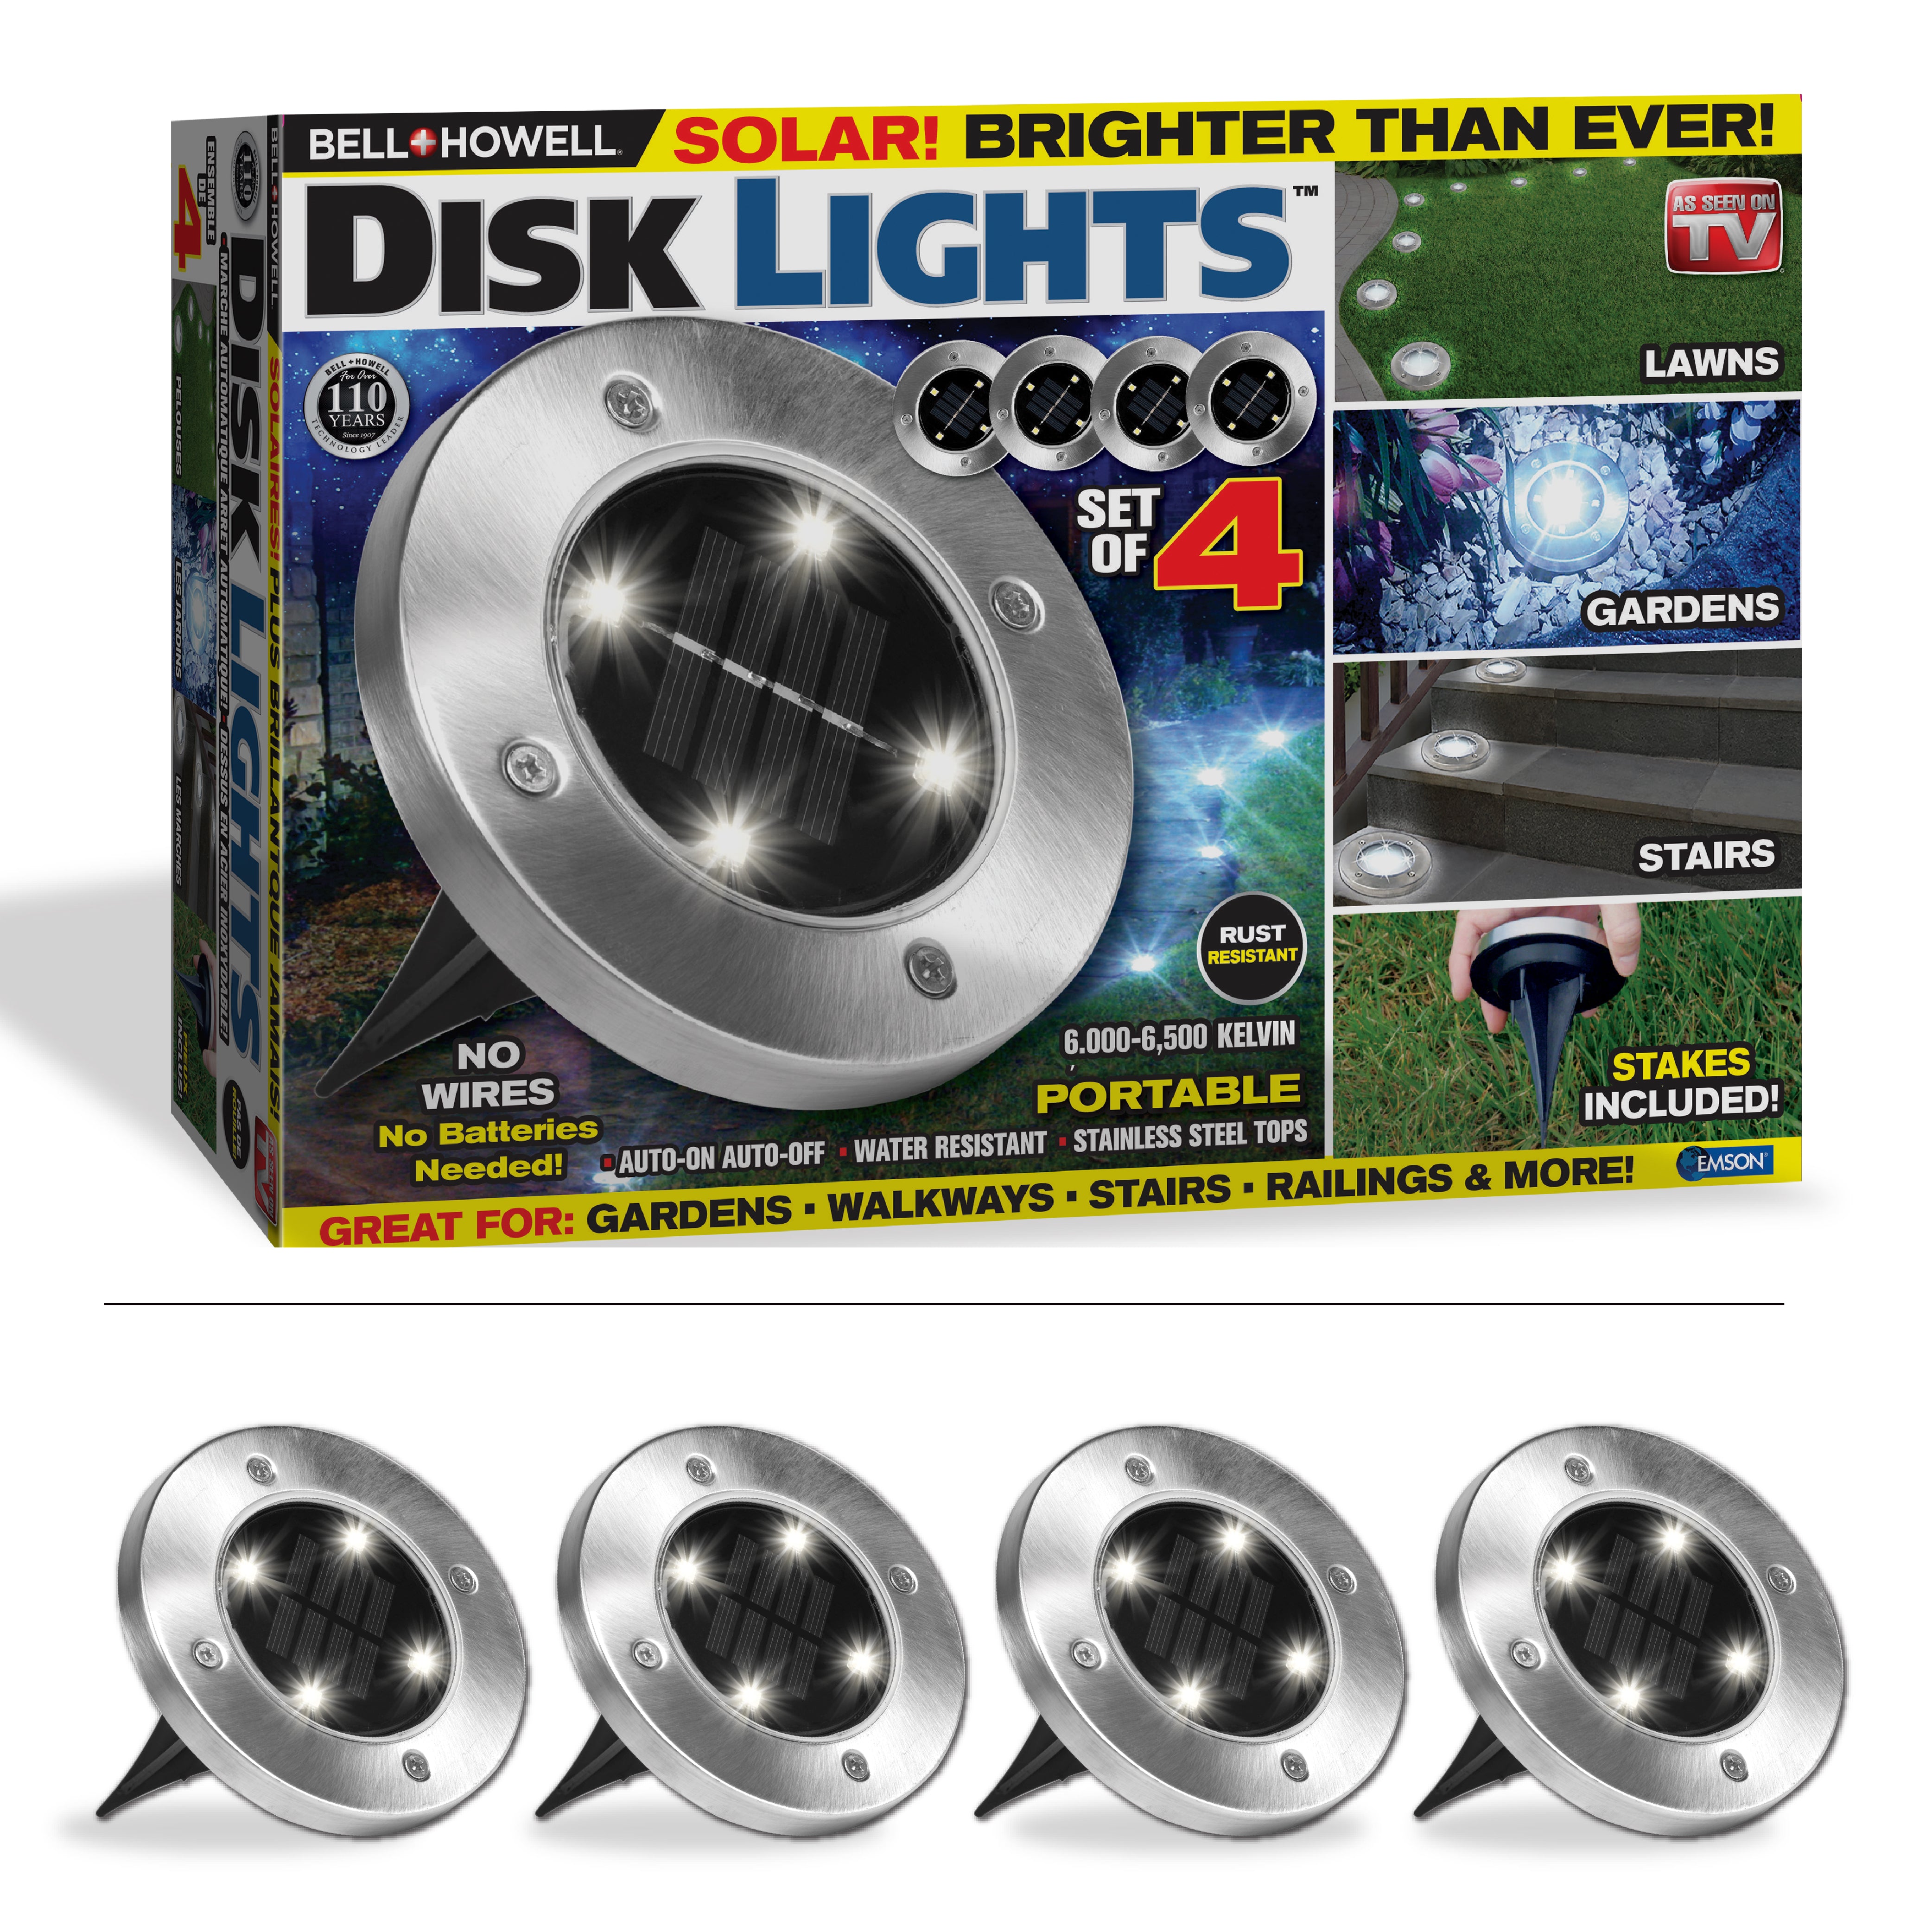 Solar Disk Lights – Bell + Howell